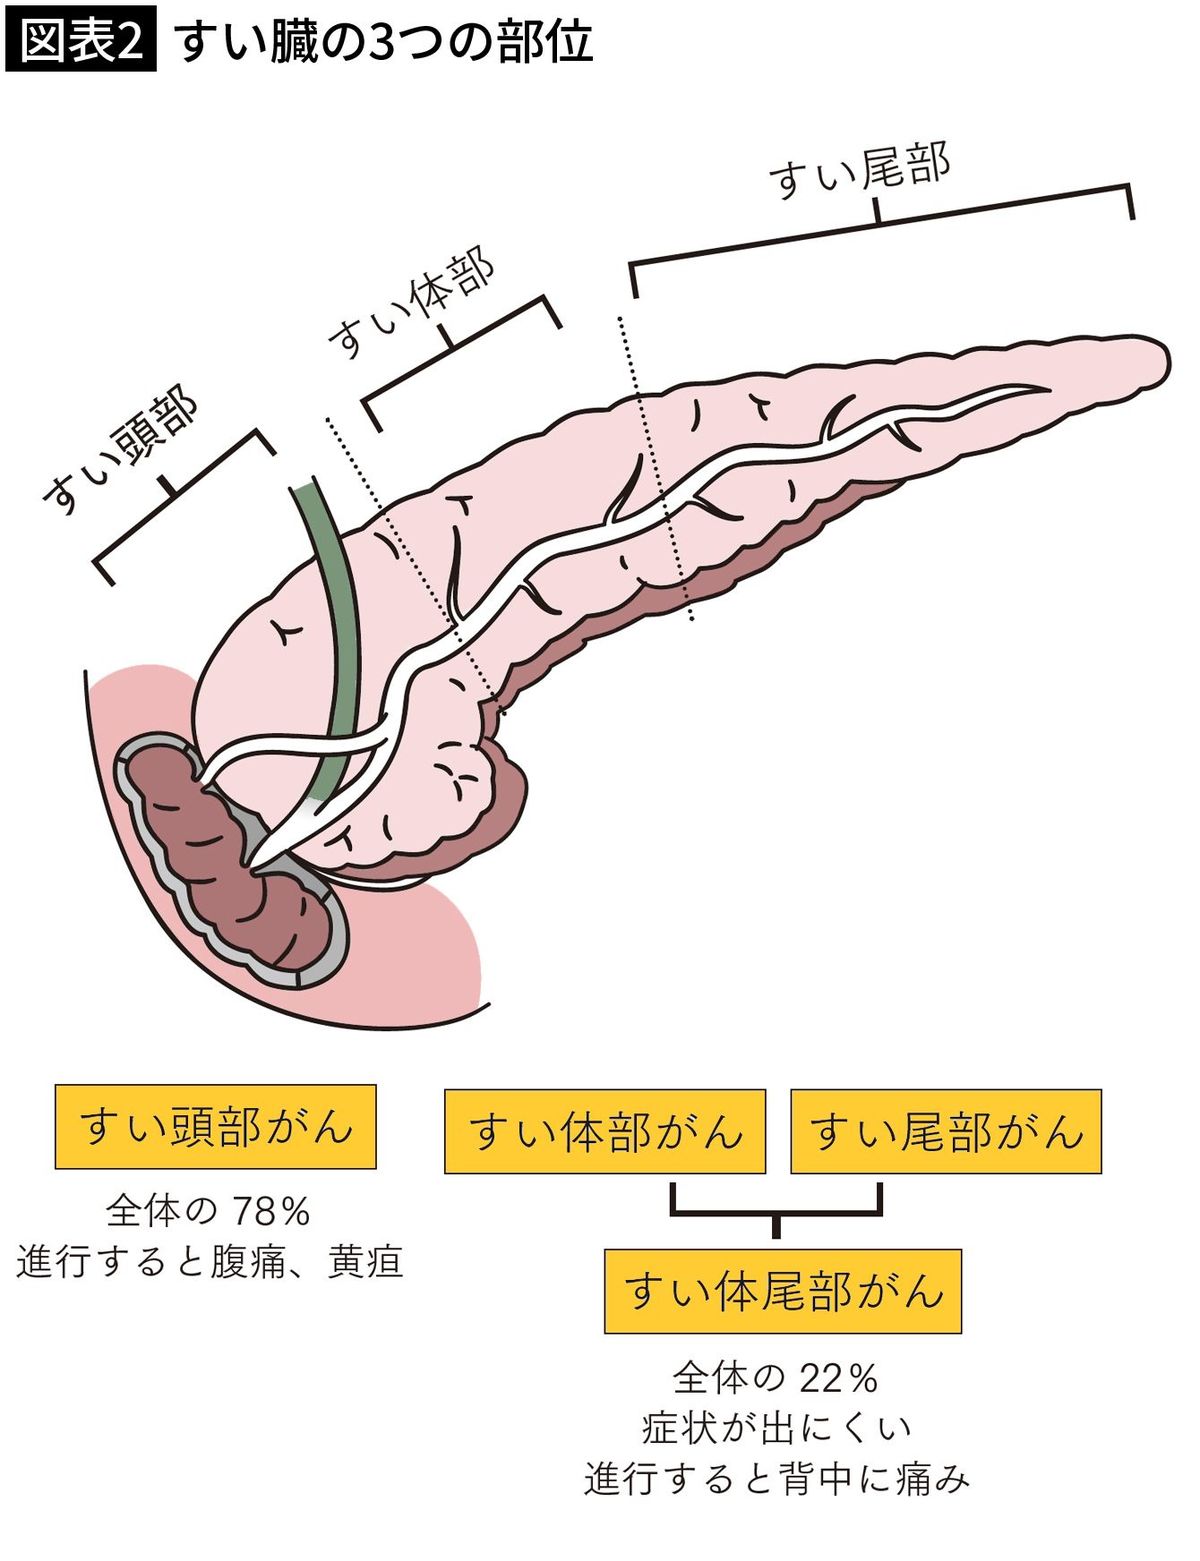 【図表2】すい臓の3つの部位